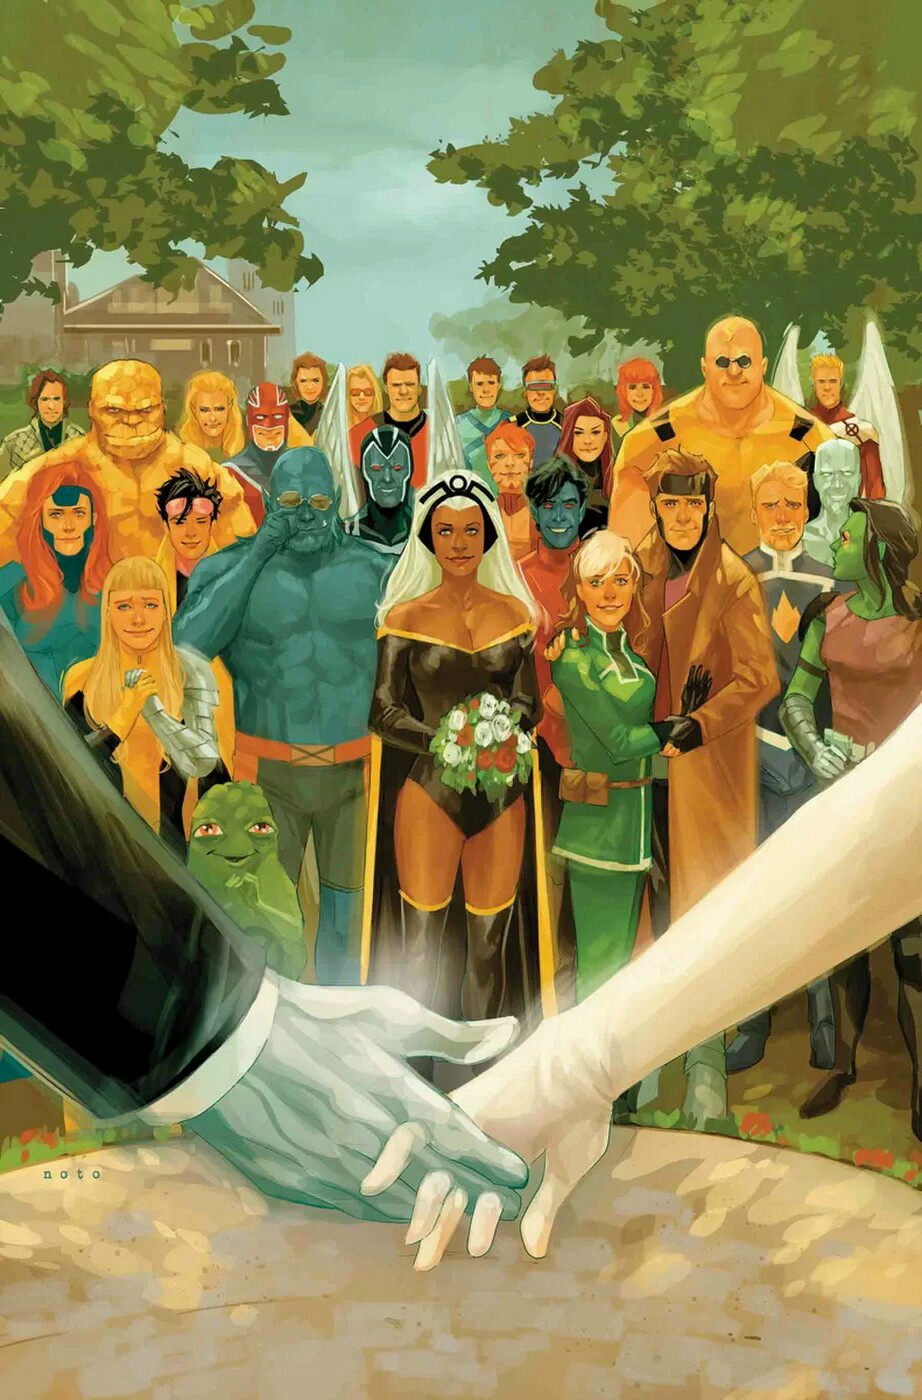 Галерея Главные события в комиксах Marvel и DC в 2018 году: свадьбы, перемены и уход легенд - 3 фото